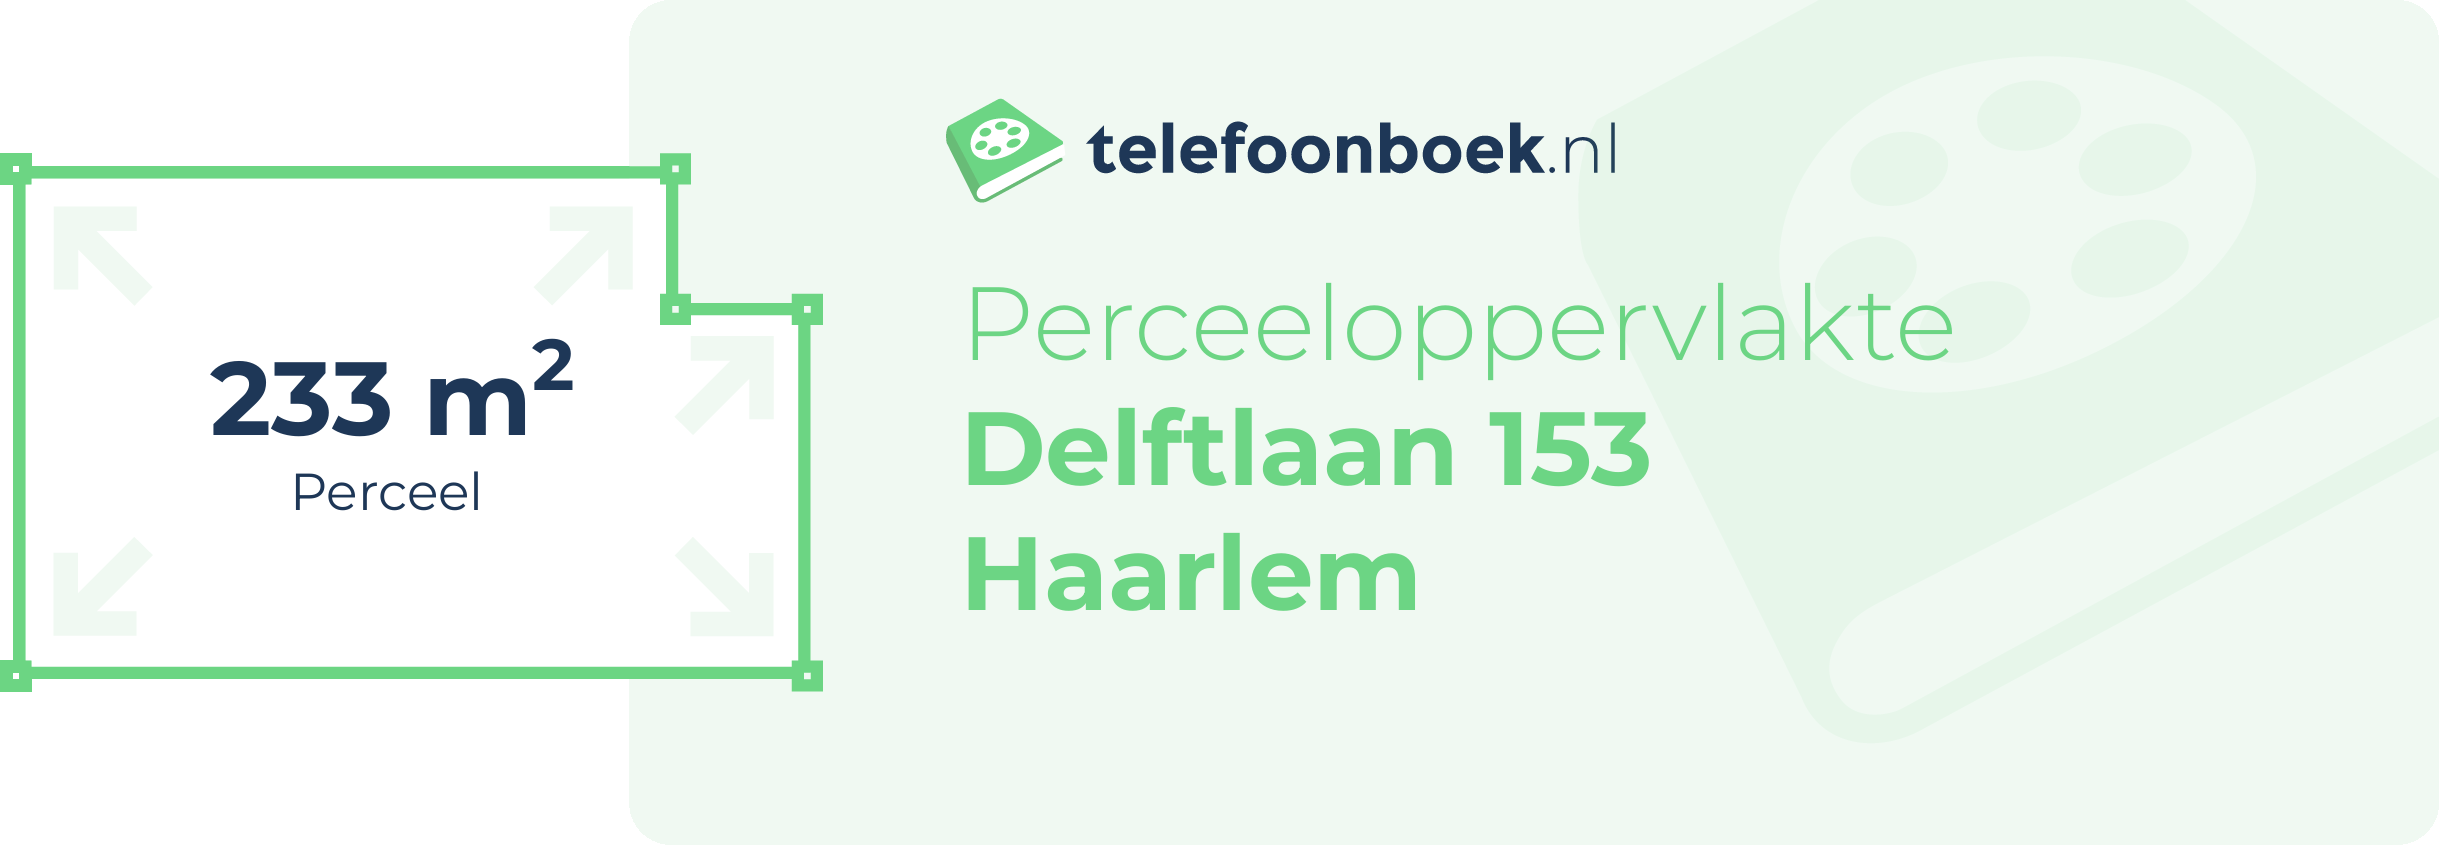 Perceeloppervlakte Delftlaan 153 Haarlem